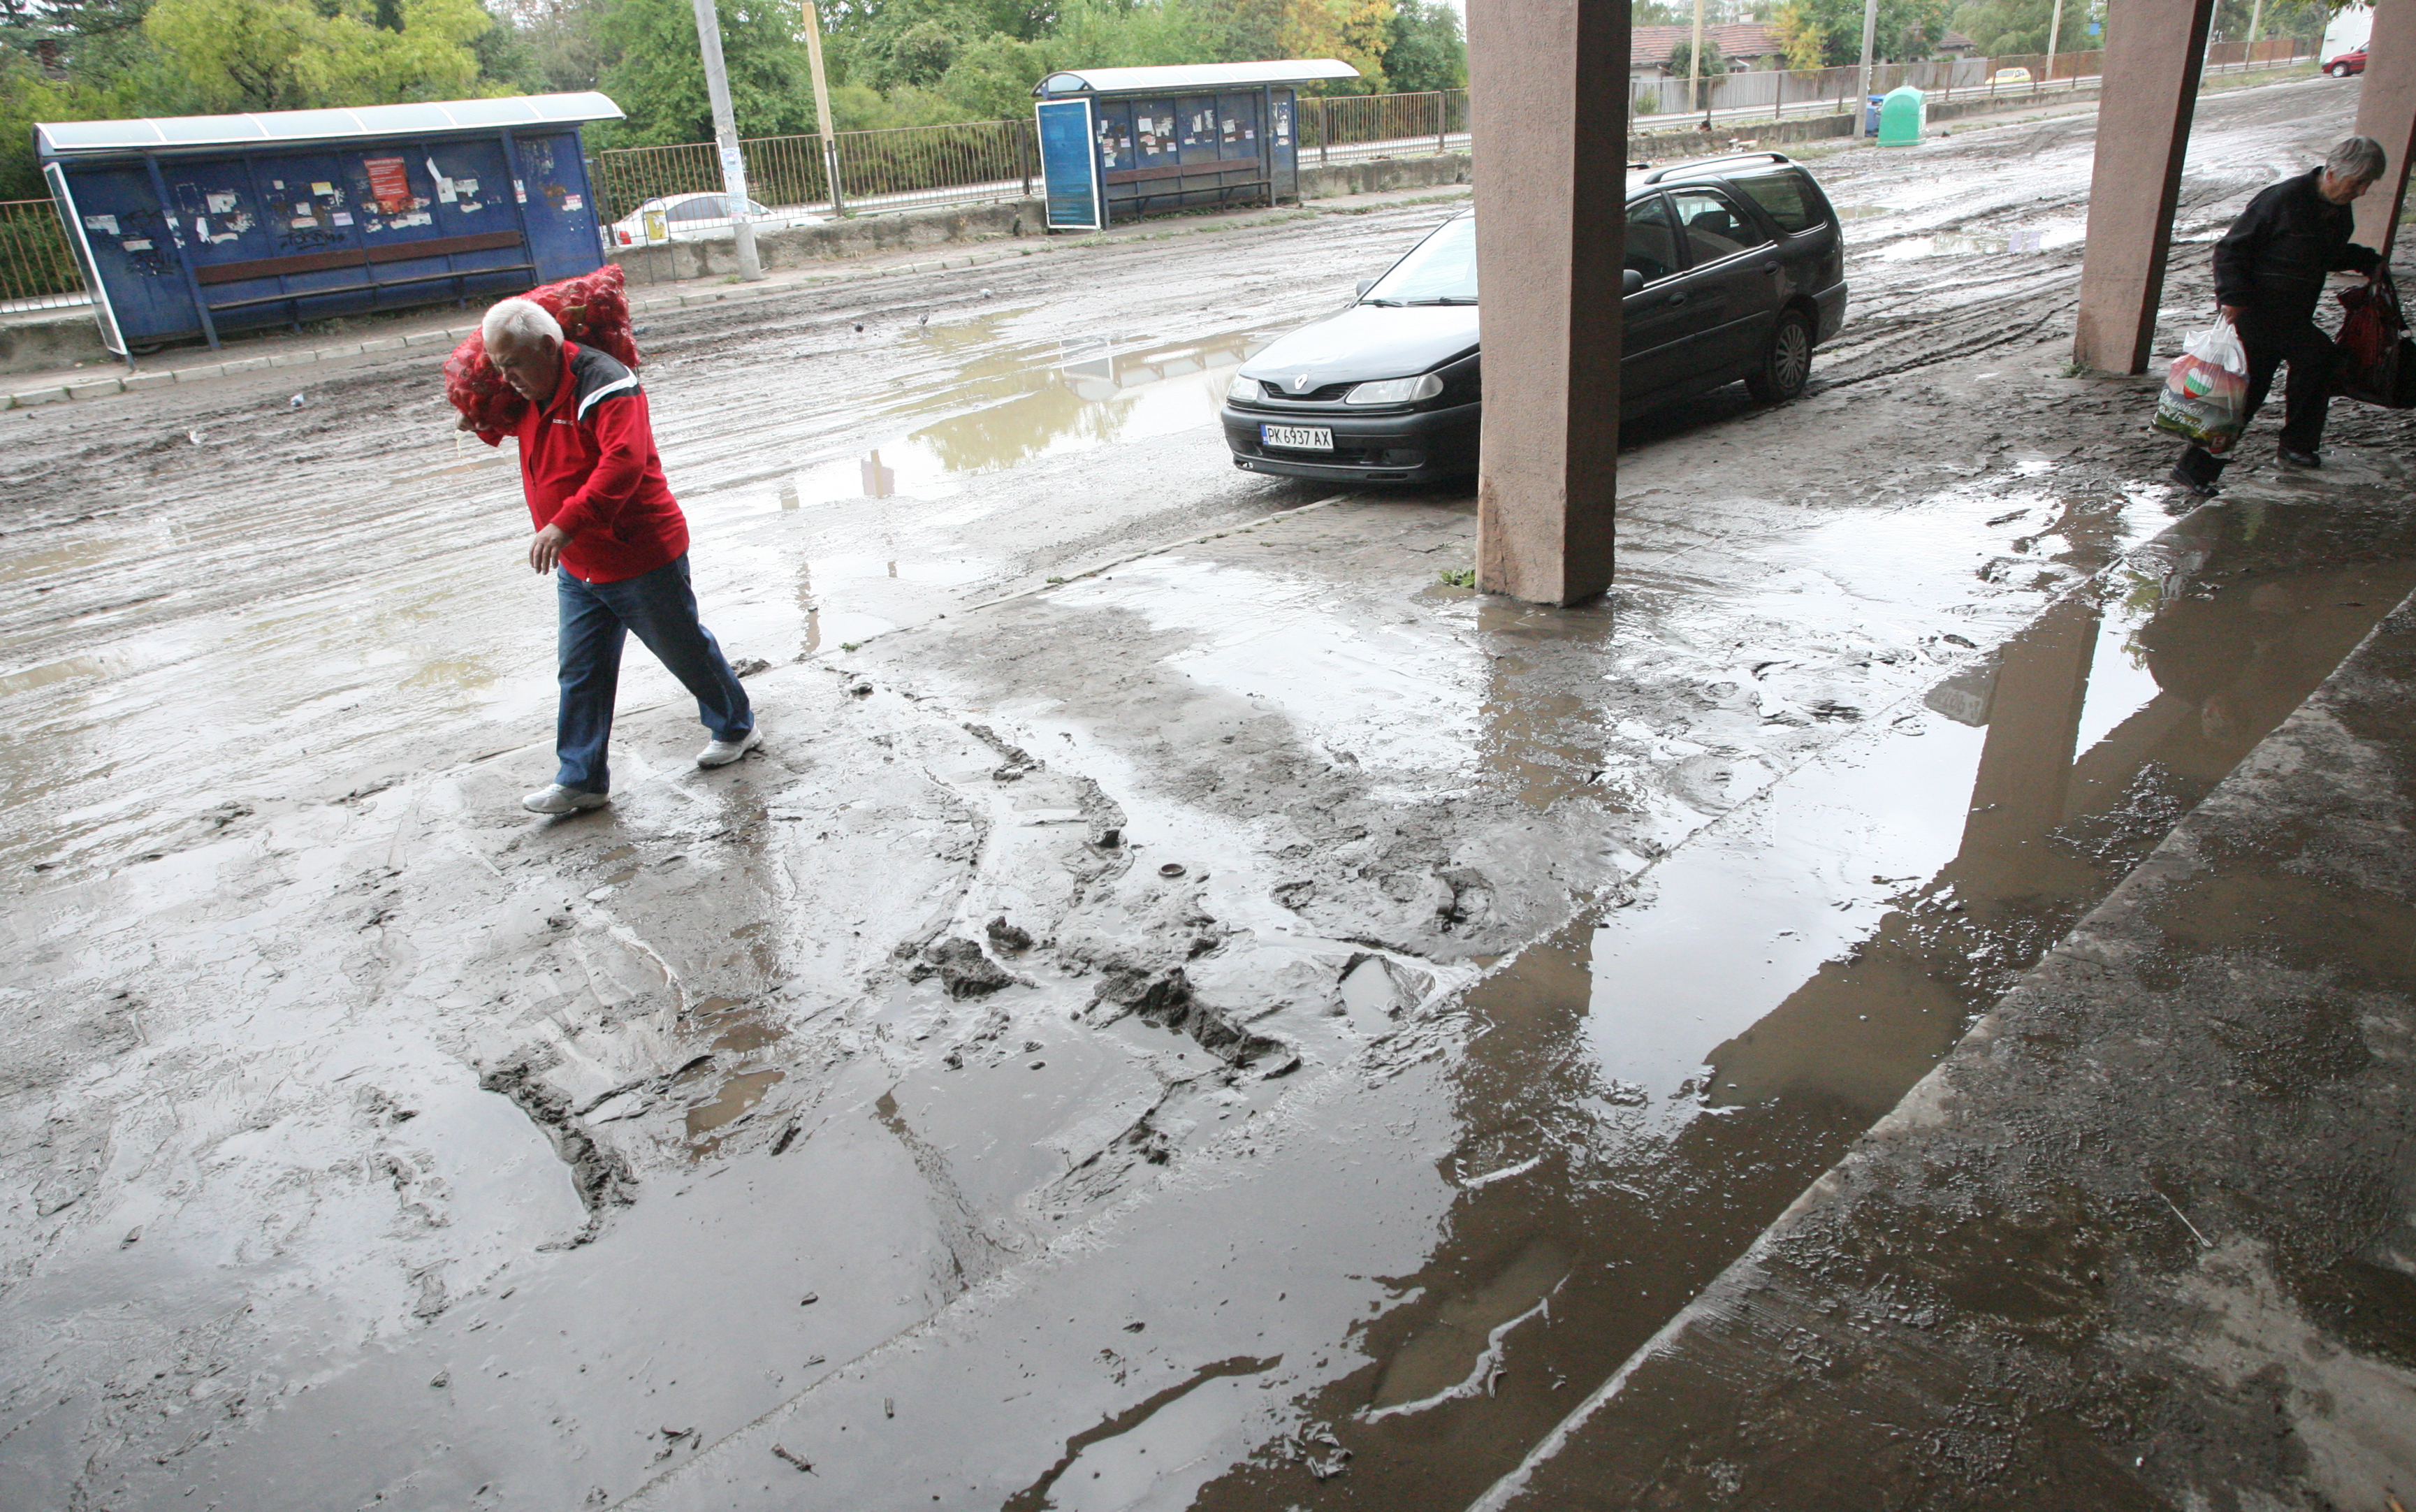 Перник бе наводнен на няколко места, след изсипалия се пороен дъжд, придружен от мощни гръмотевици. Почти всички улици на града бяха наводнени.